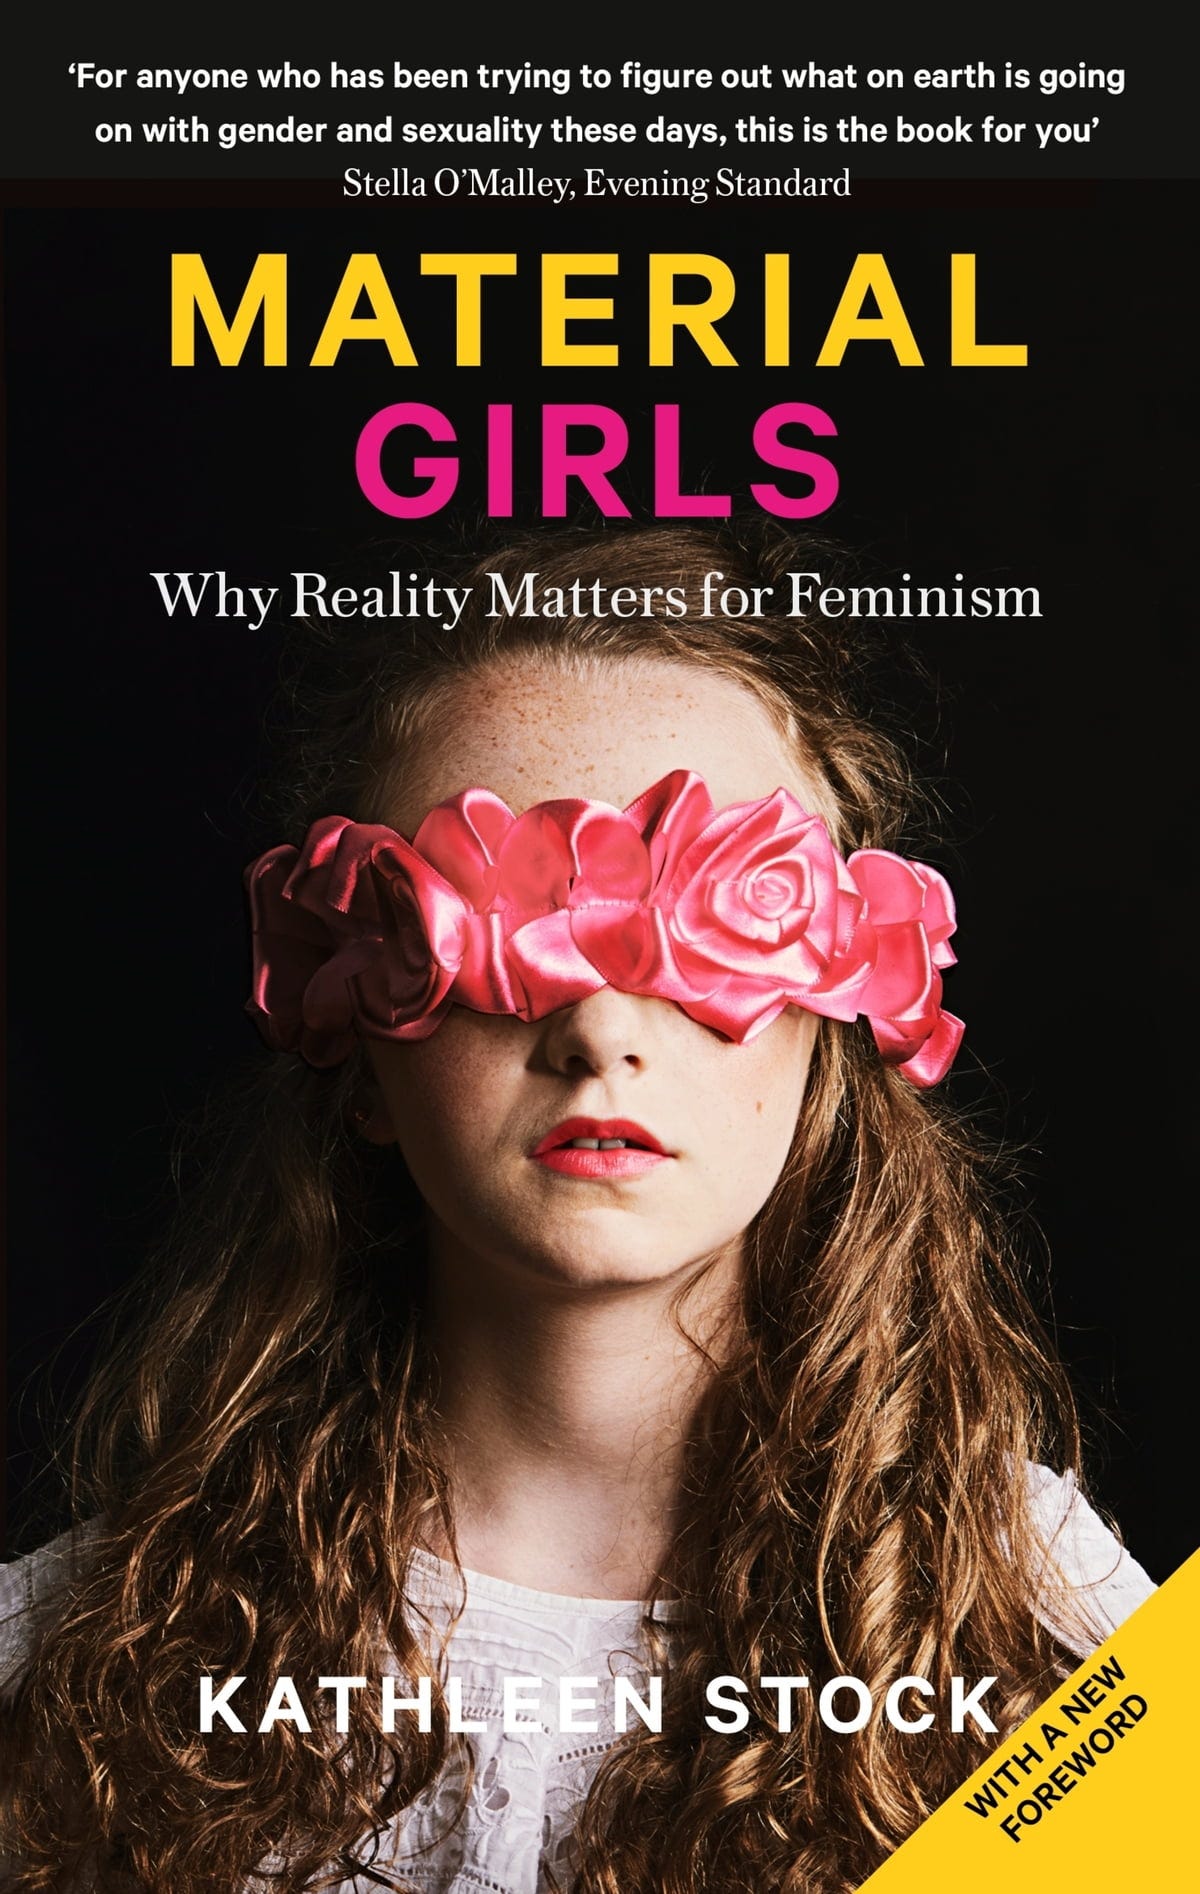 Material Girls eBook by Kathleen Stock - EPUB | Rakuten Kobo Canada